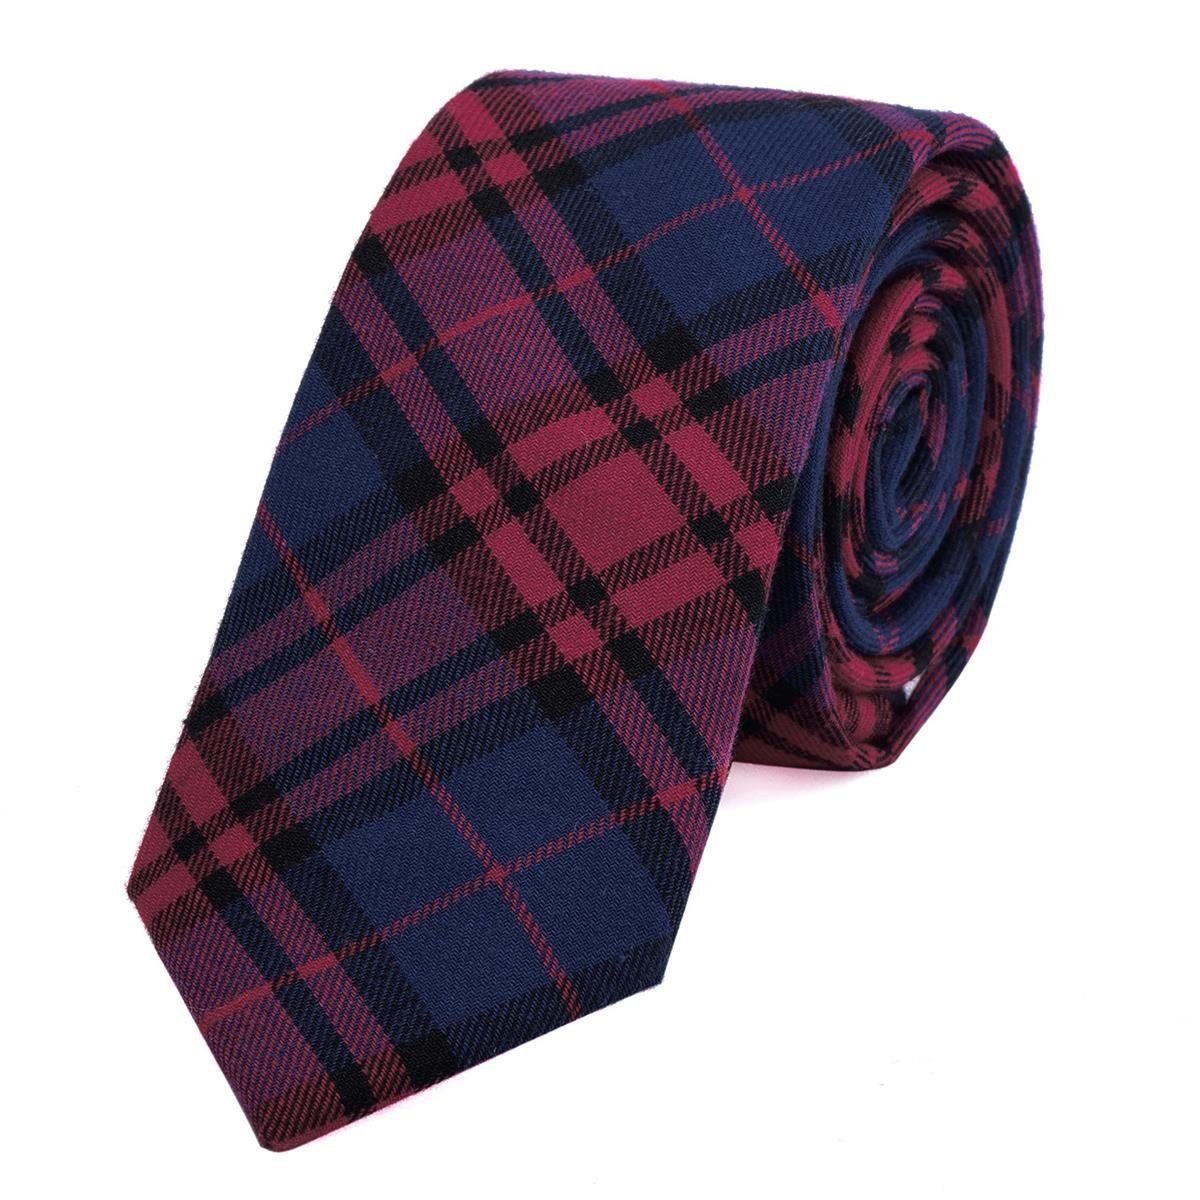 DonDon Krawatte Herren Krawatte 6 cm mit Karos oder Streifen (Packung, 1-St., 1x Krawatte) Baumwolle, kariert oder gestreift, für Büro oder festliche Veranstaltungen rot-dunkelblau kariert 2